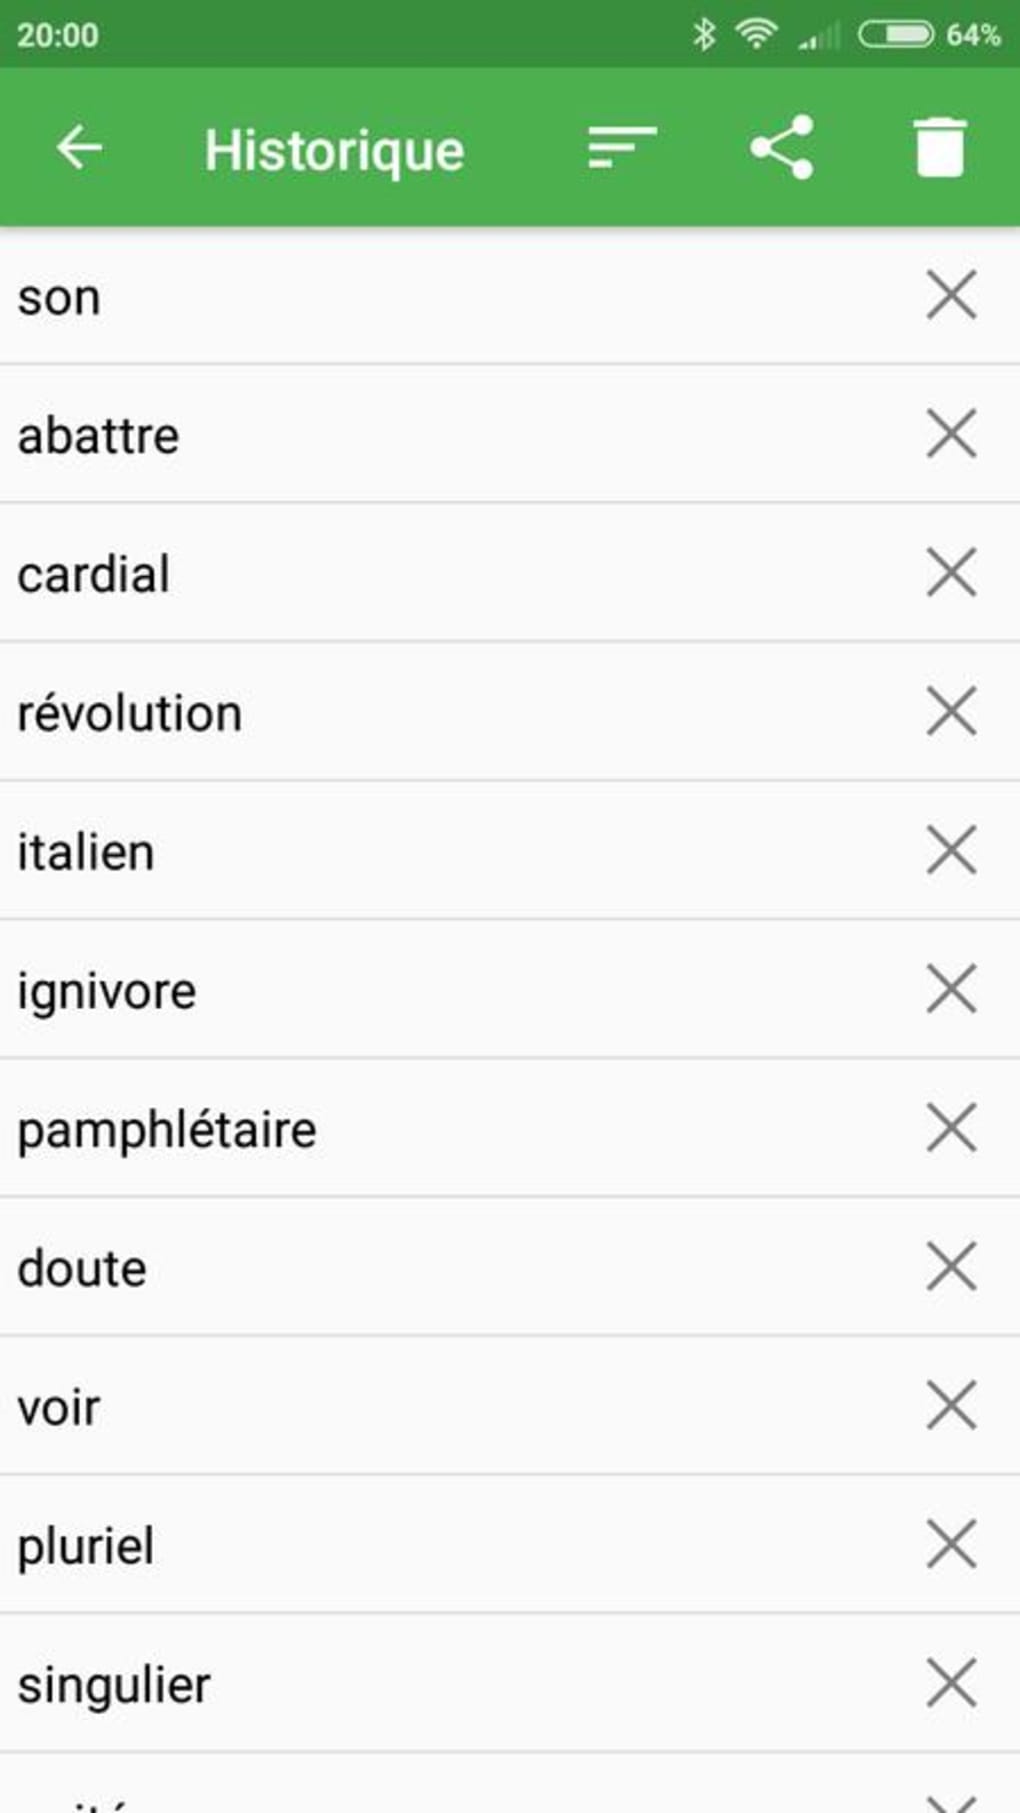 Dicionário de inglês - Linguee - Download do APK para Android